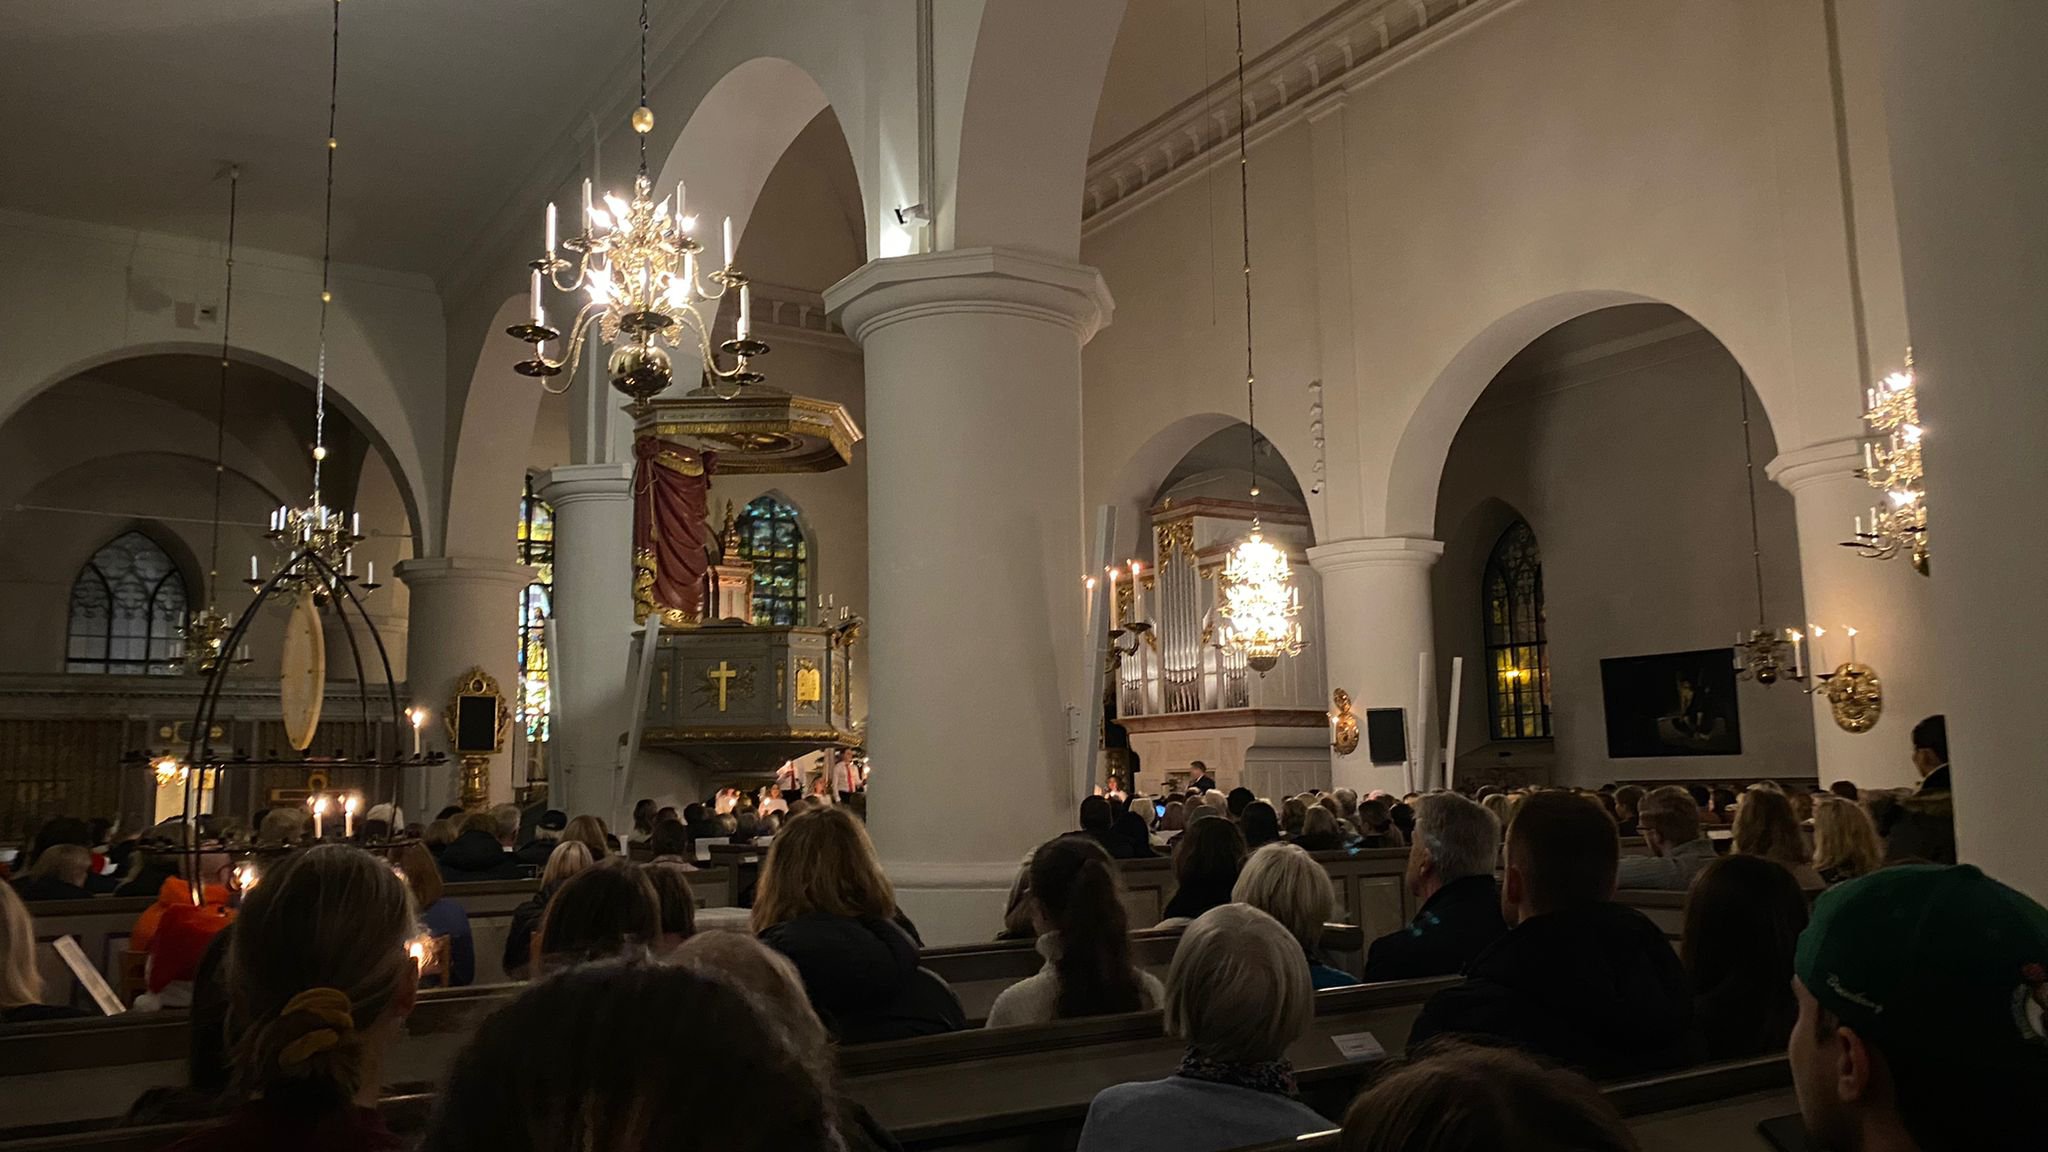 Am 13. Dezember wird das Luciafest in den skandinavischen Ländern oft mit einem Kirchgang gefeiert. Hier sieht man den Abendgottesdienst in einer der Jönköpinger Kirchern. (Foto: Schwagerick)